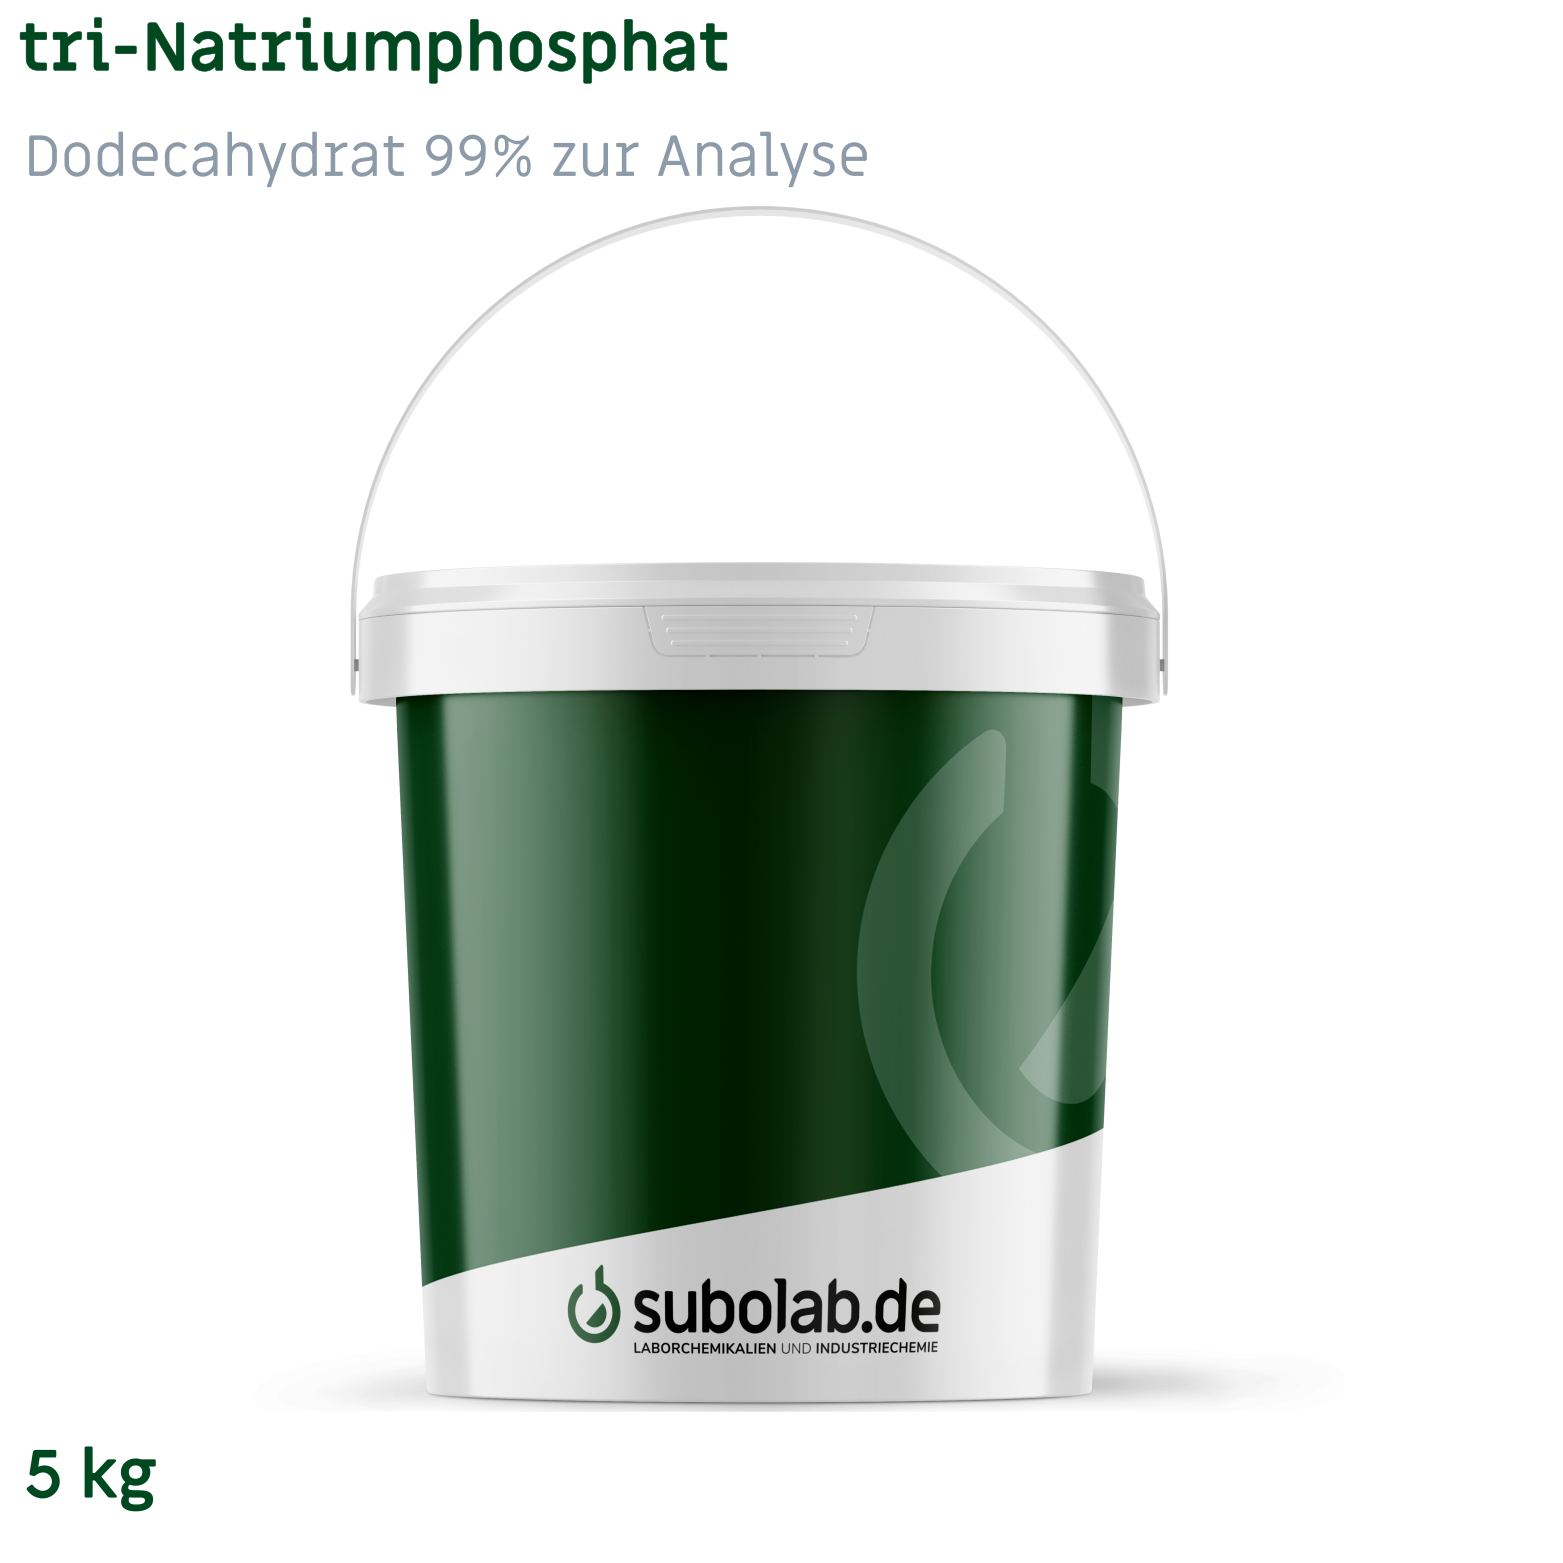 Bild von tri-Natriumphosphat - Dodecahydrat 99% zur Analyse (5 kg)